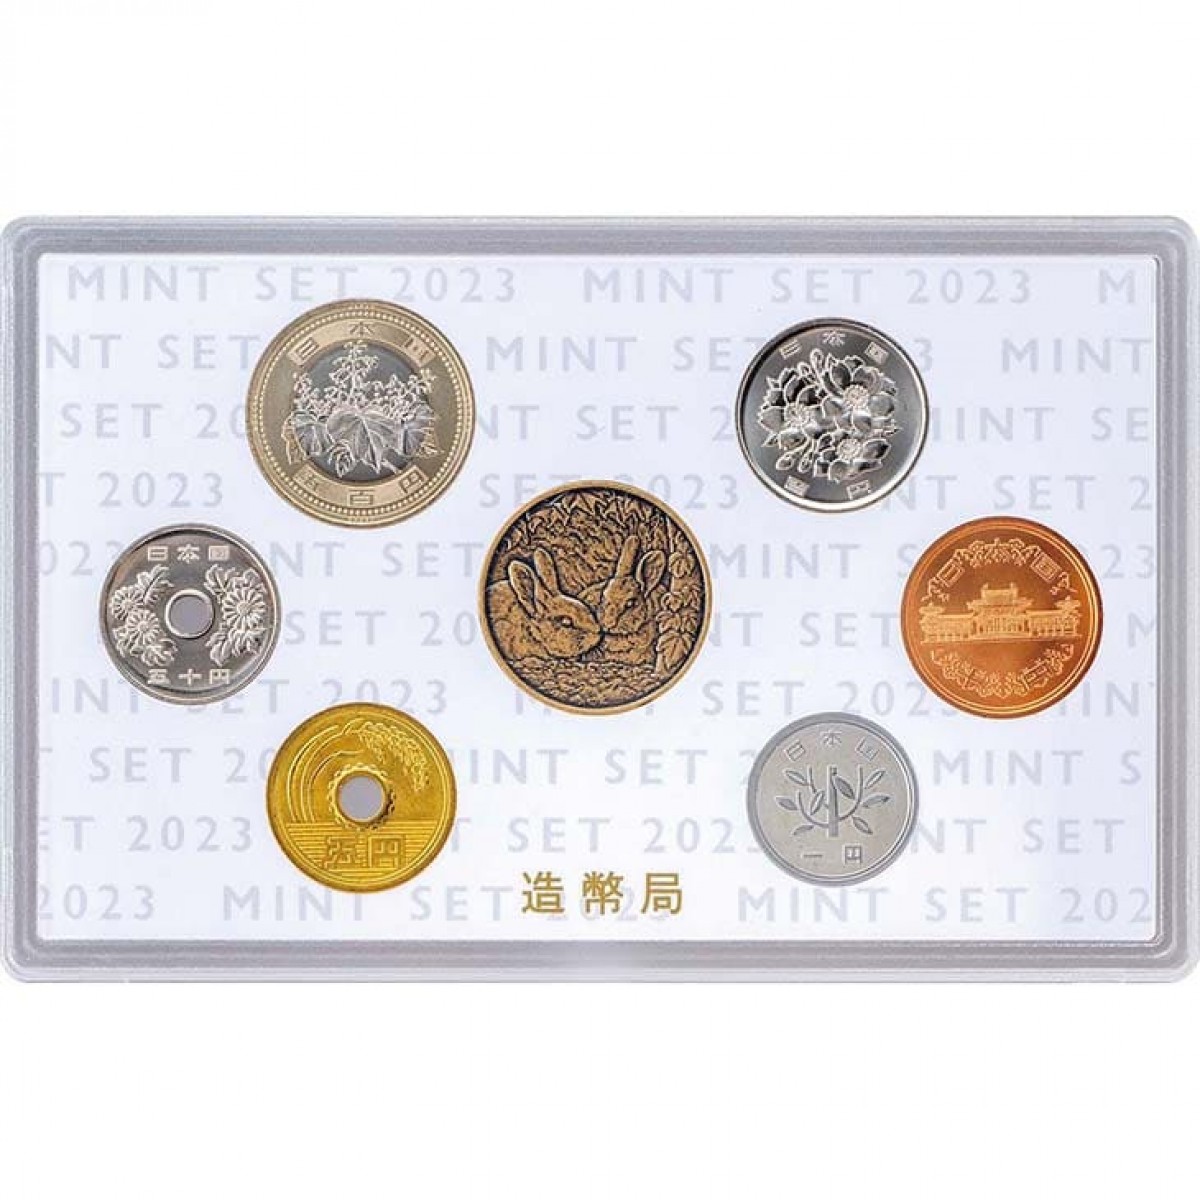 同時購入5種類のミント貨幣セットをまとめて格安でお譲りします。 コレクション